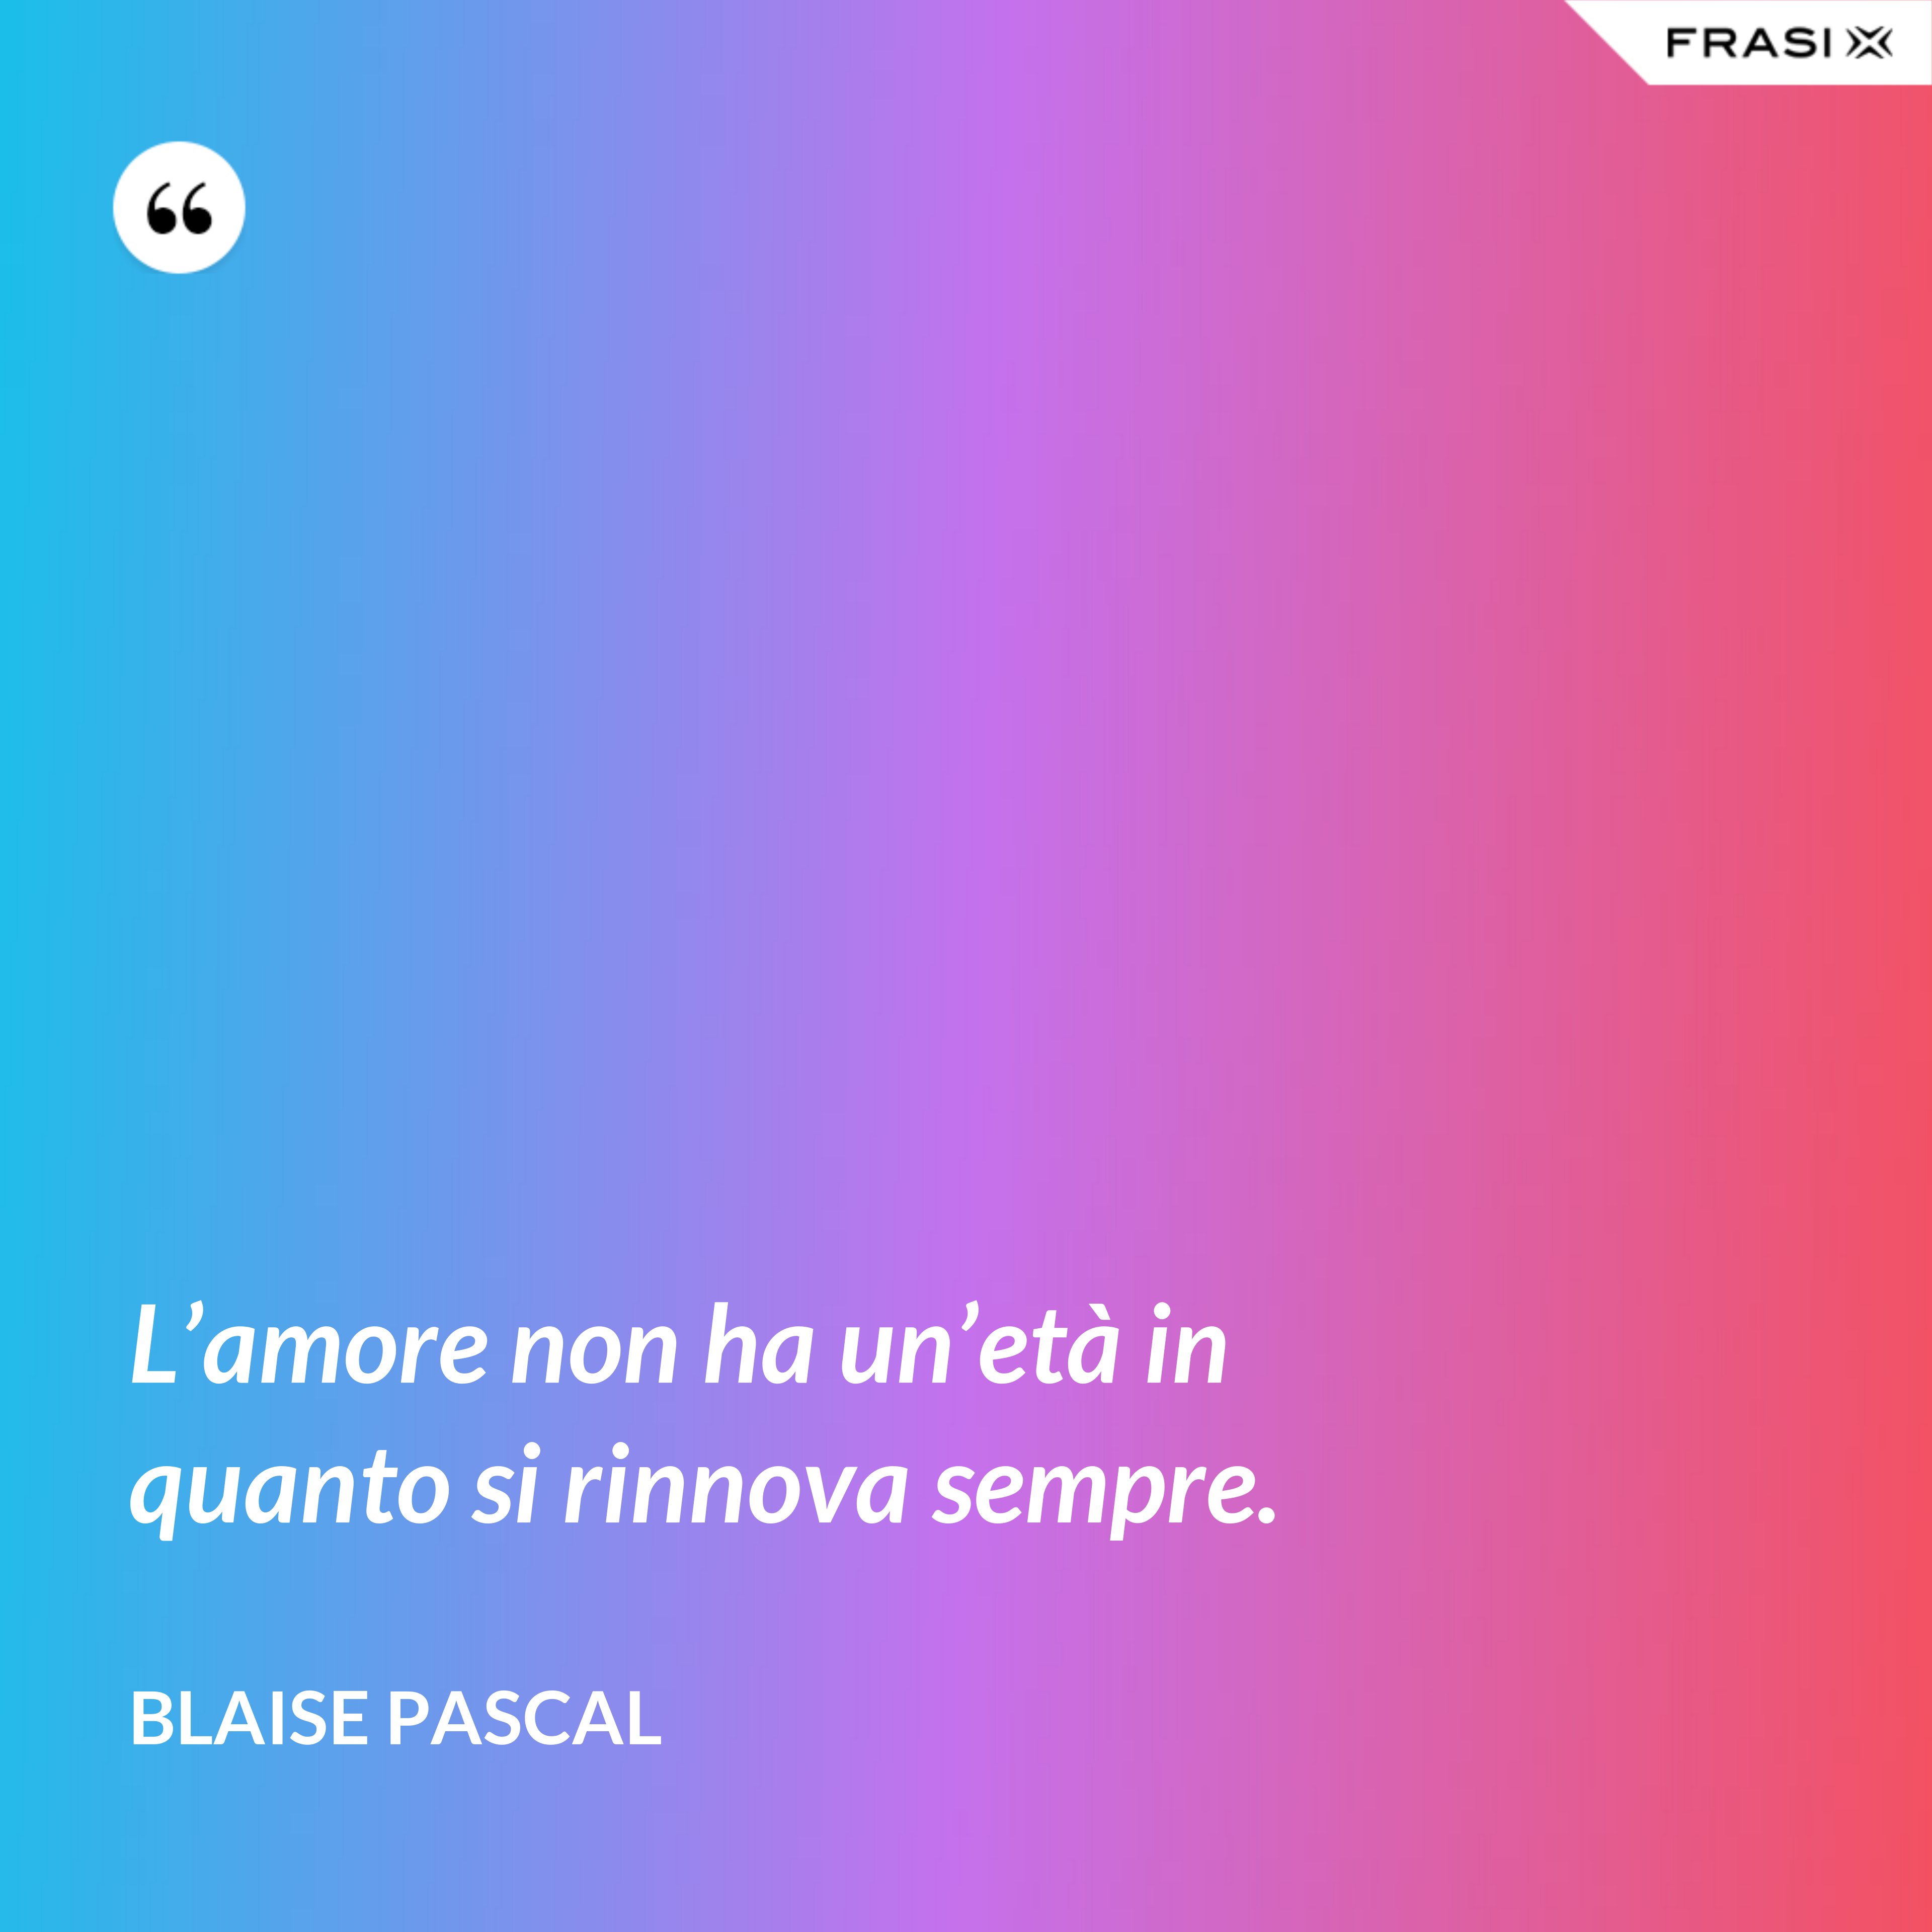 L’amore non ha un’età in quanto si rinnova sempre. - Blaise Pascal